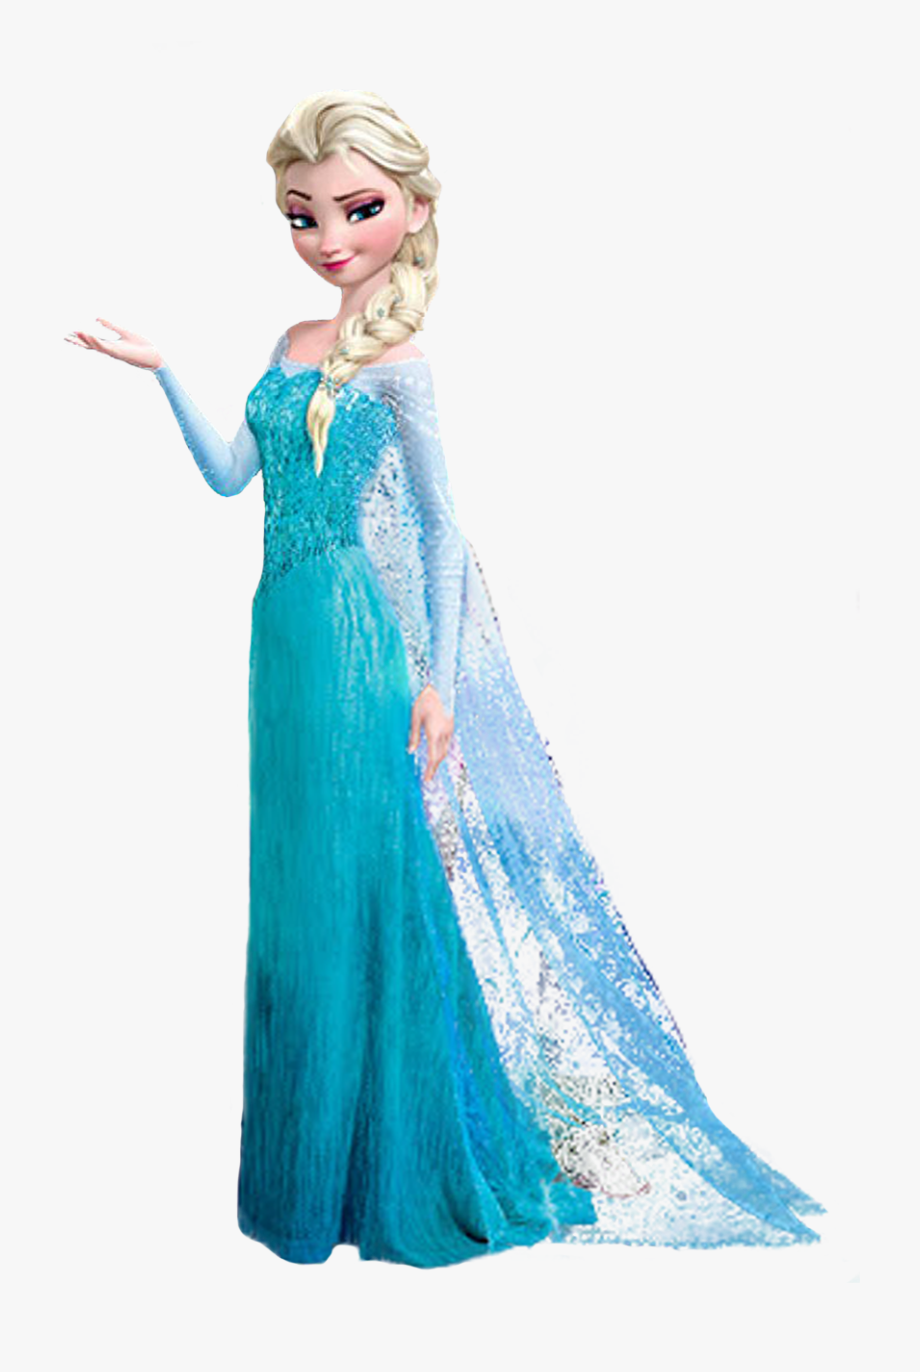 Disney Princess Elsa Clip Art